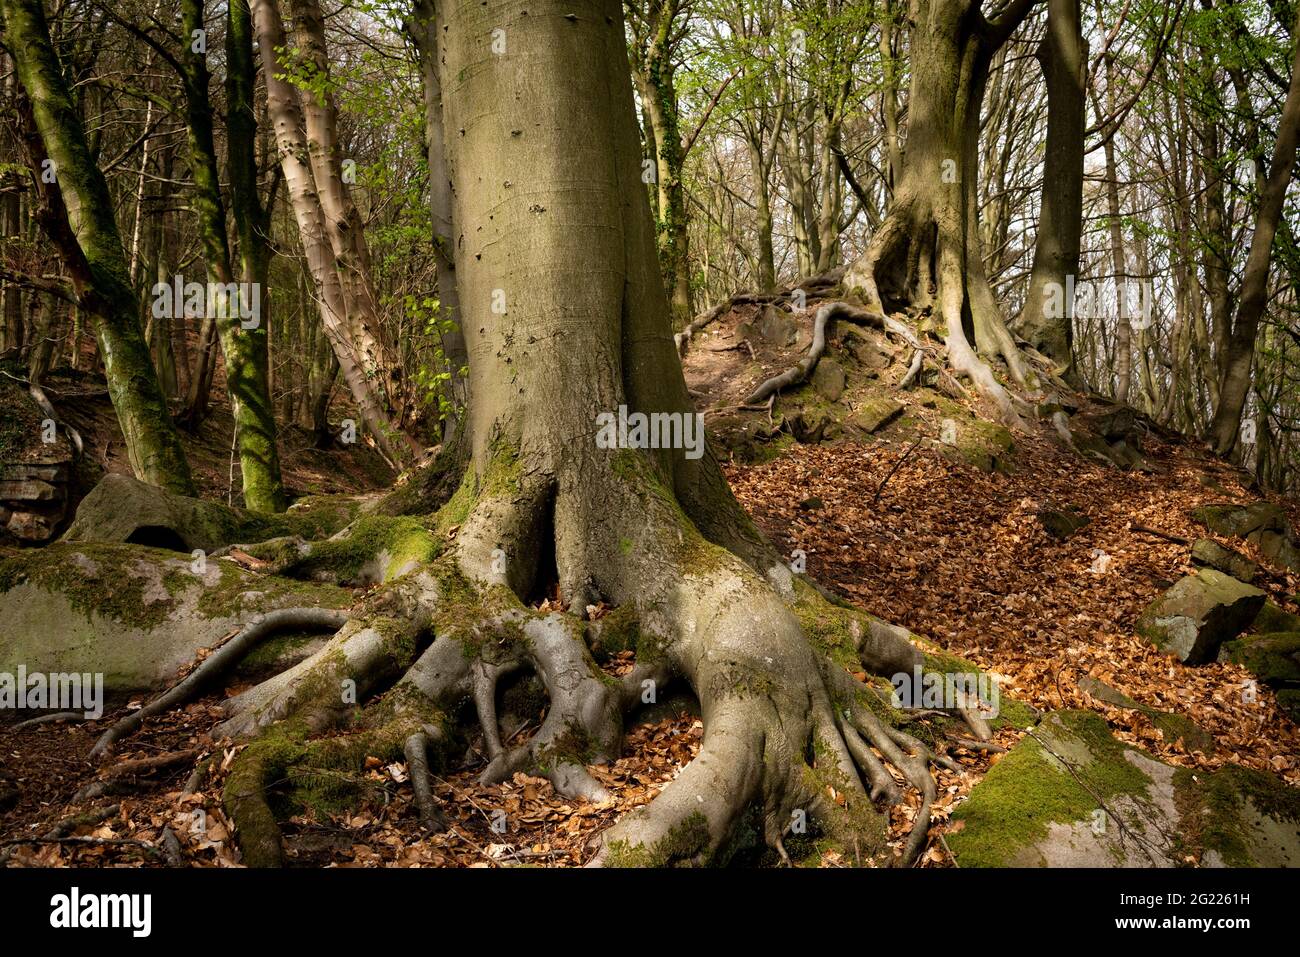 Le pâturage des moutons s'incline 'le Dingle'. Forêt avec arbres avec racines aériennes. Derbyshire Peak district, Angleterre, Royaume-Uni Banque D'Images